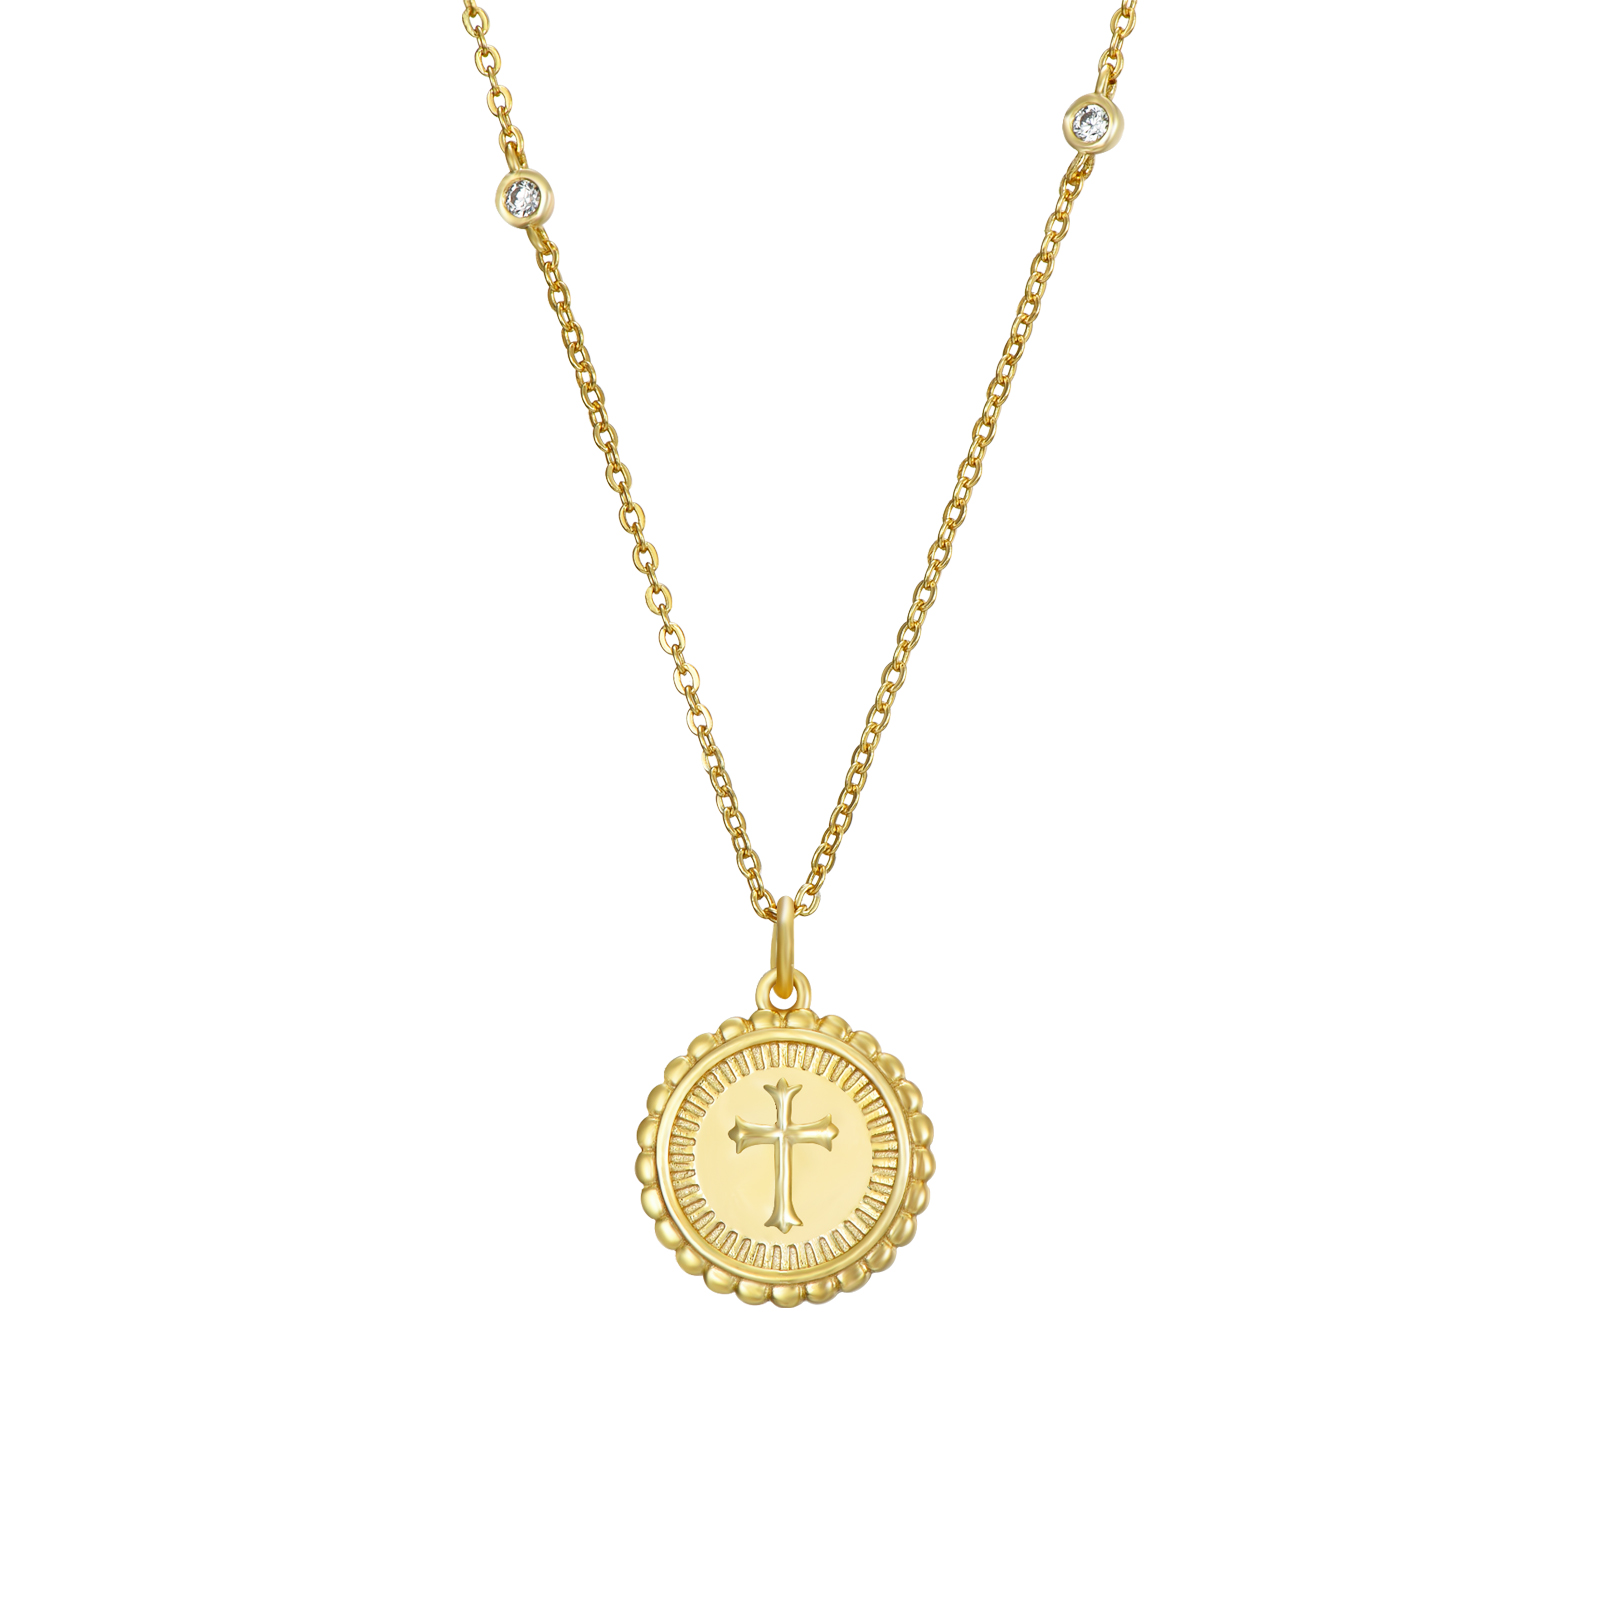 COZ0357DO-collar-plata-dorada-circonitas-intercaladas-medalla-cruz-joyeria-acebo